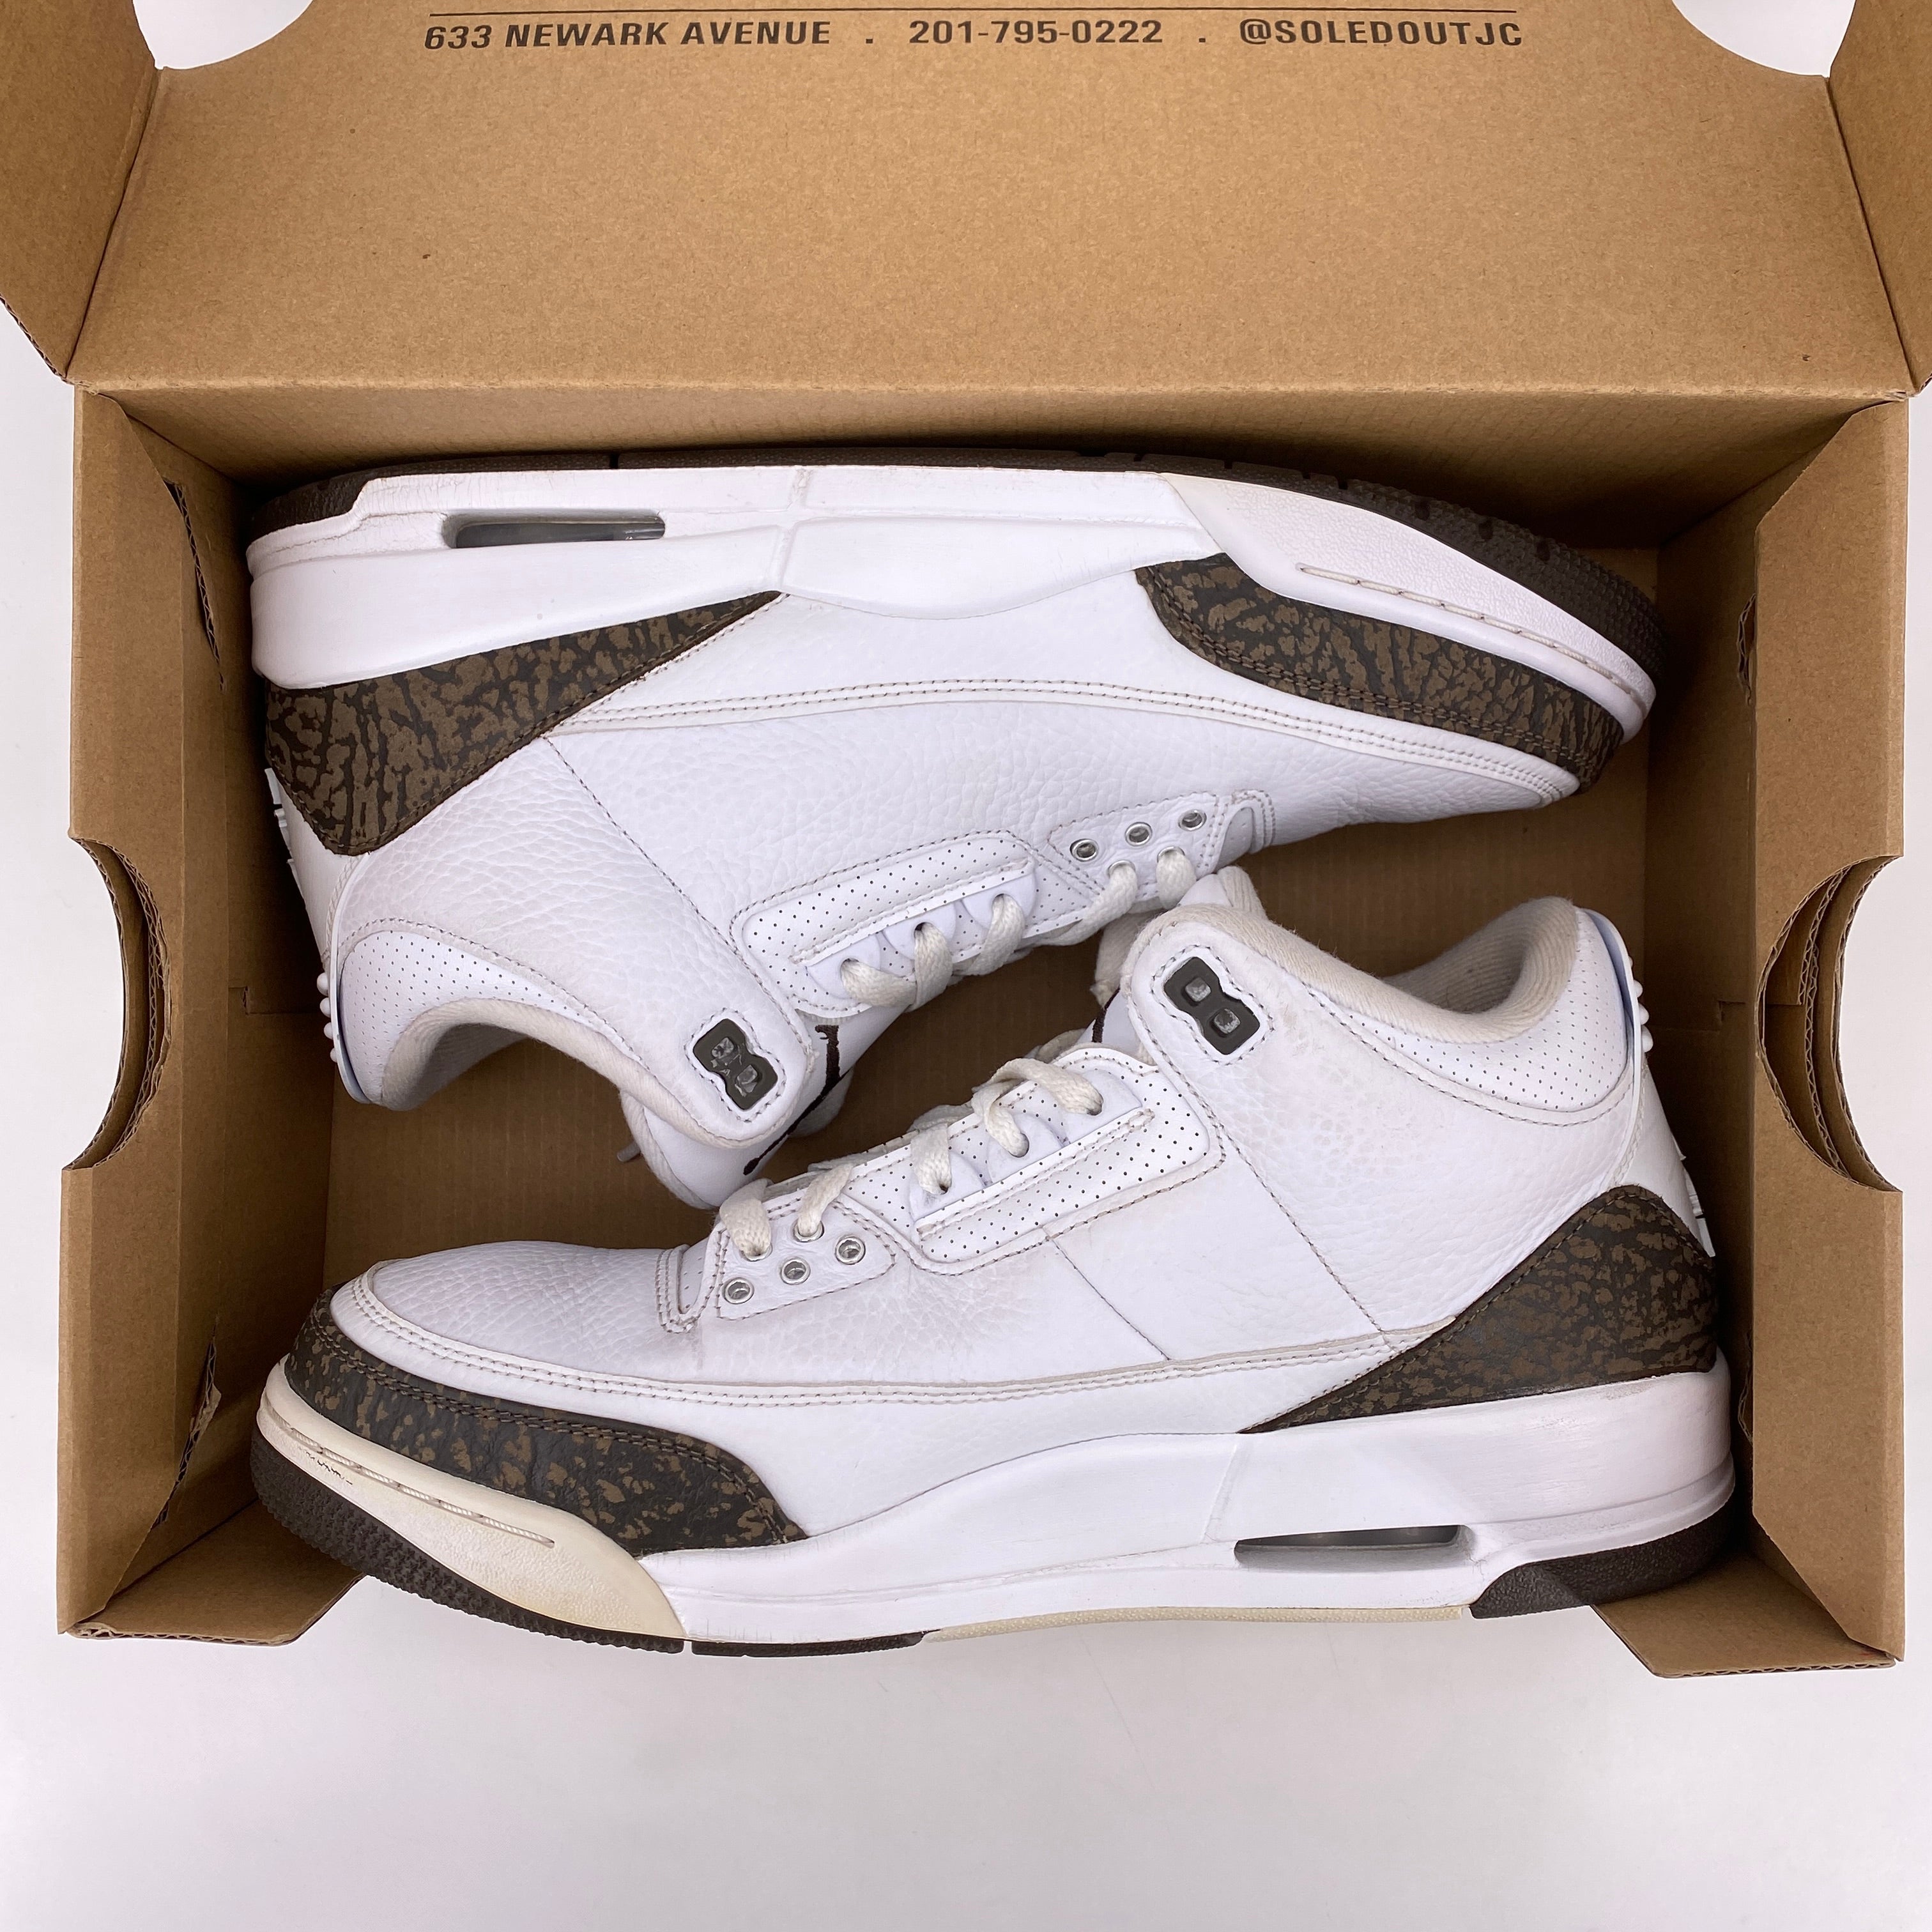 Air Jordan 3 Retro &quot;Mocha&quot; 2018 Used Size 11